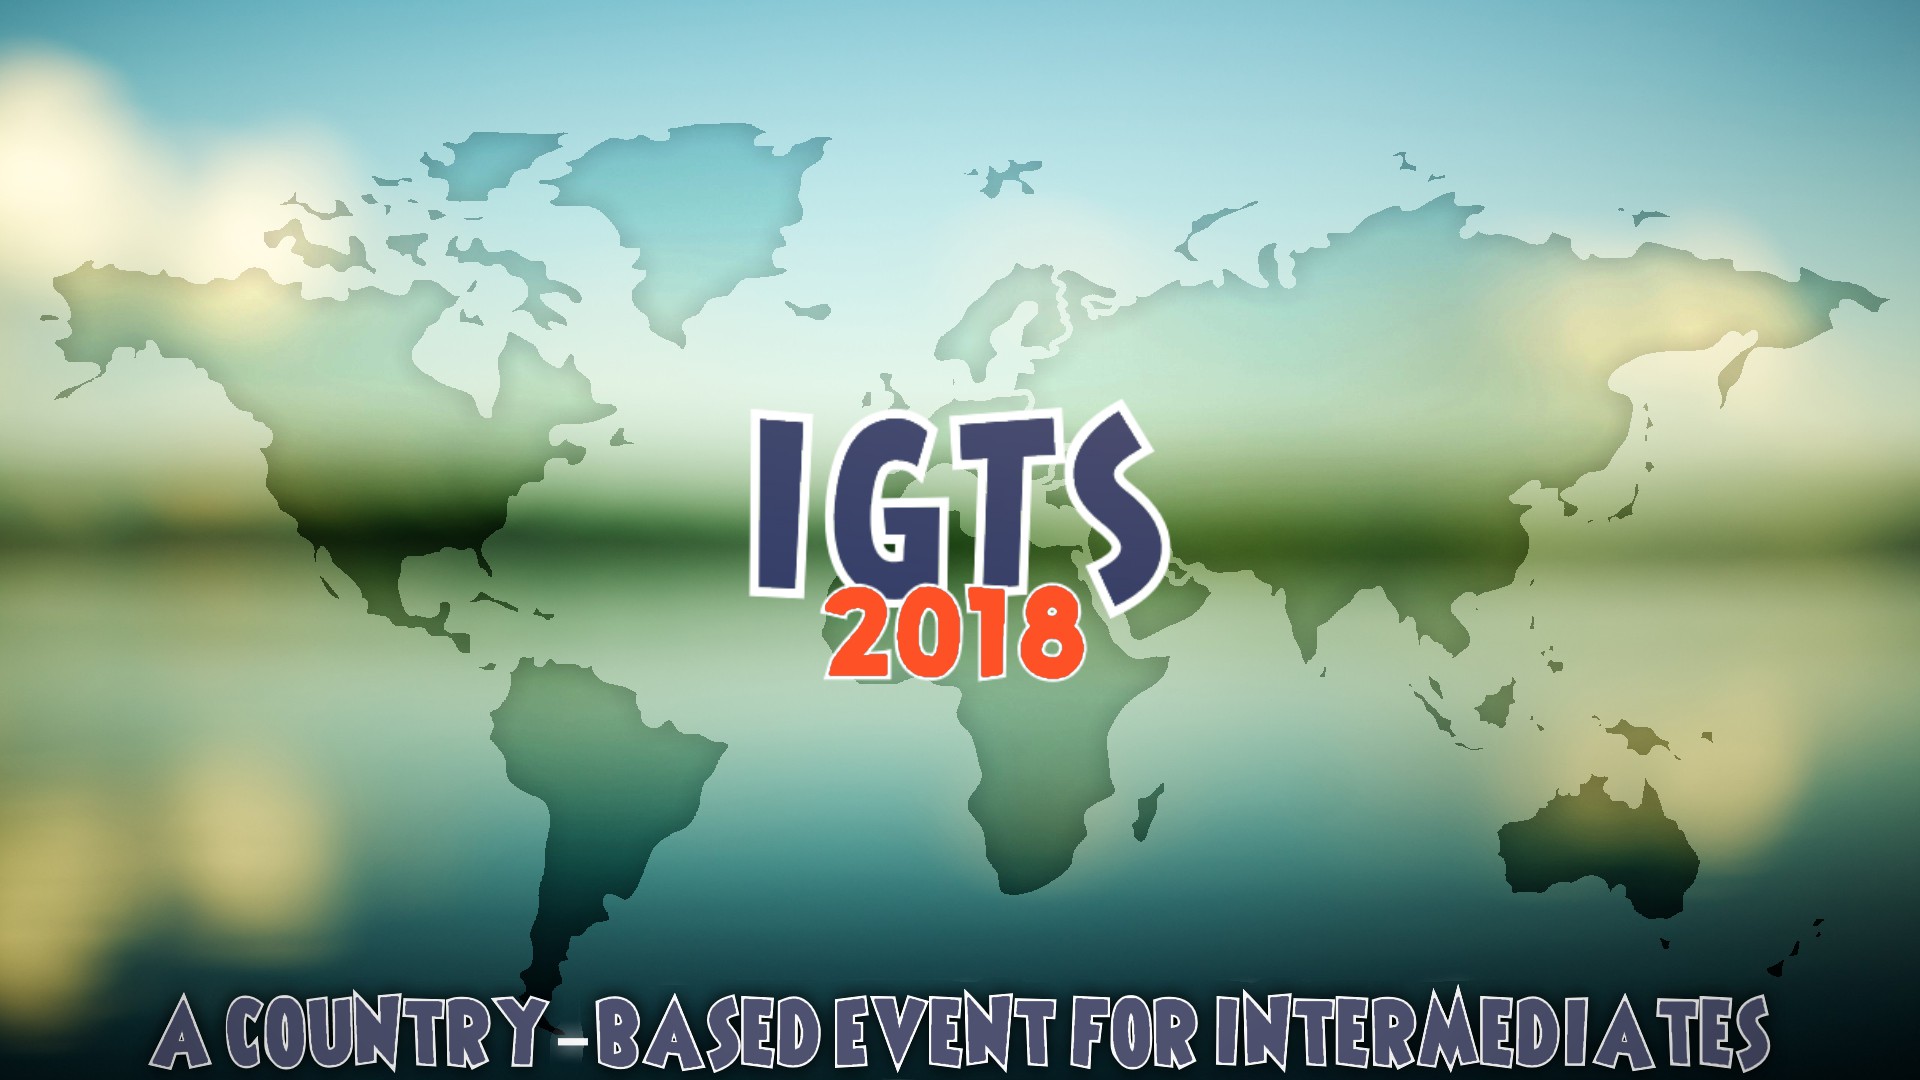 IGTS 2018 logo